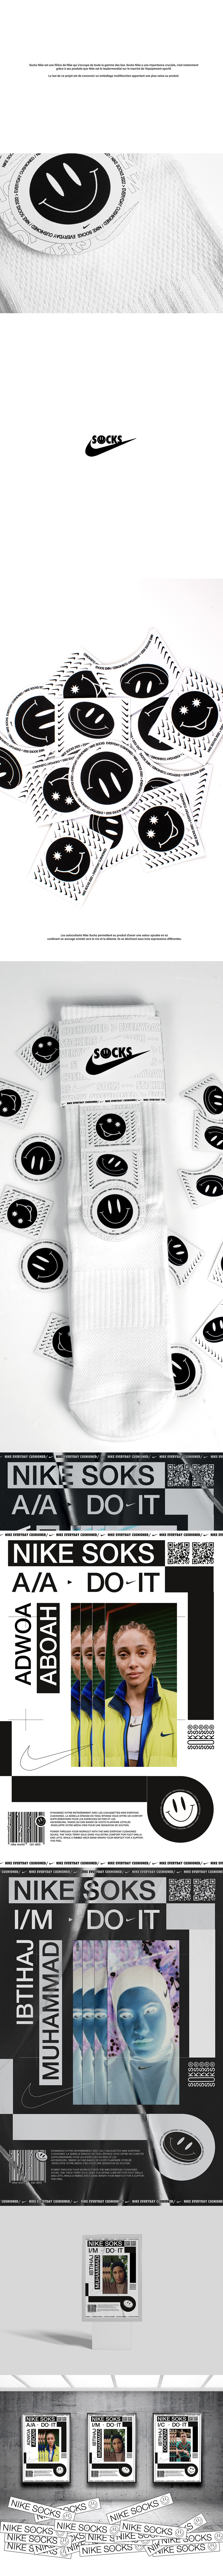 communication emballage graphisme identité visuelle Nike publicité smiley socks sports STIKERS